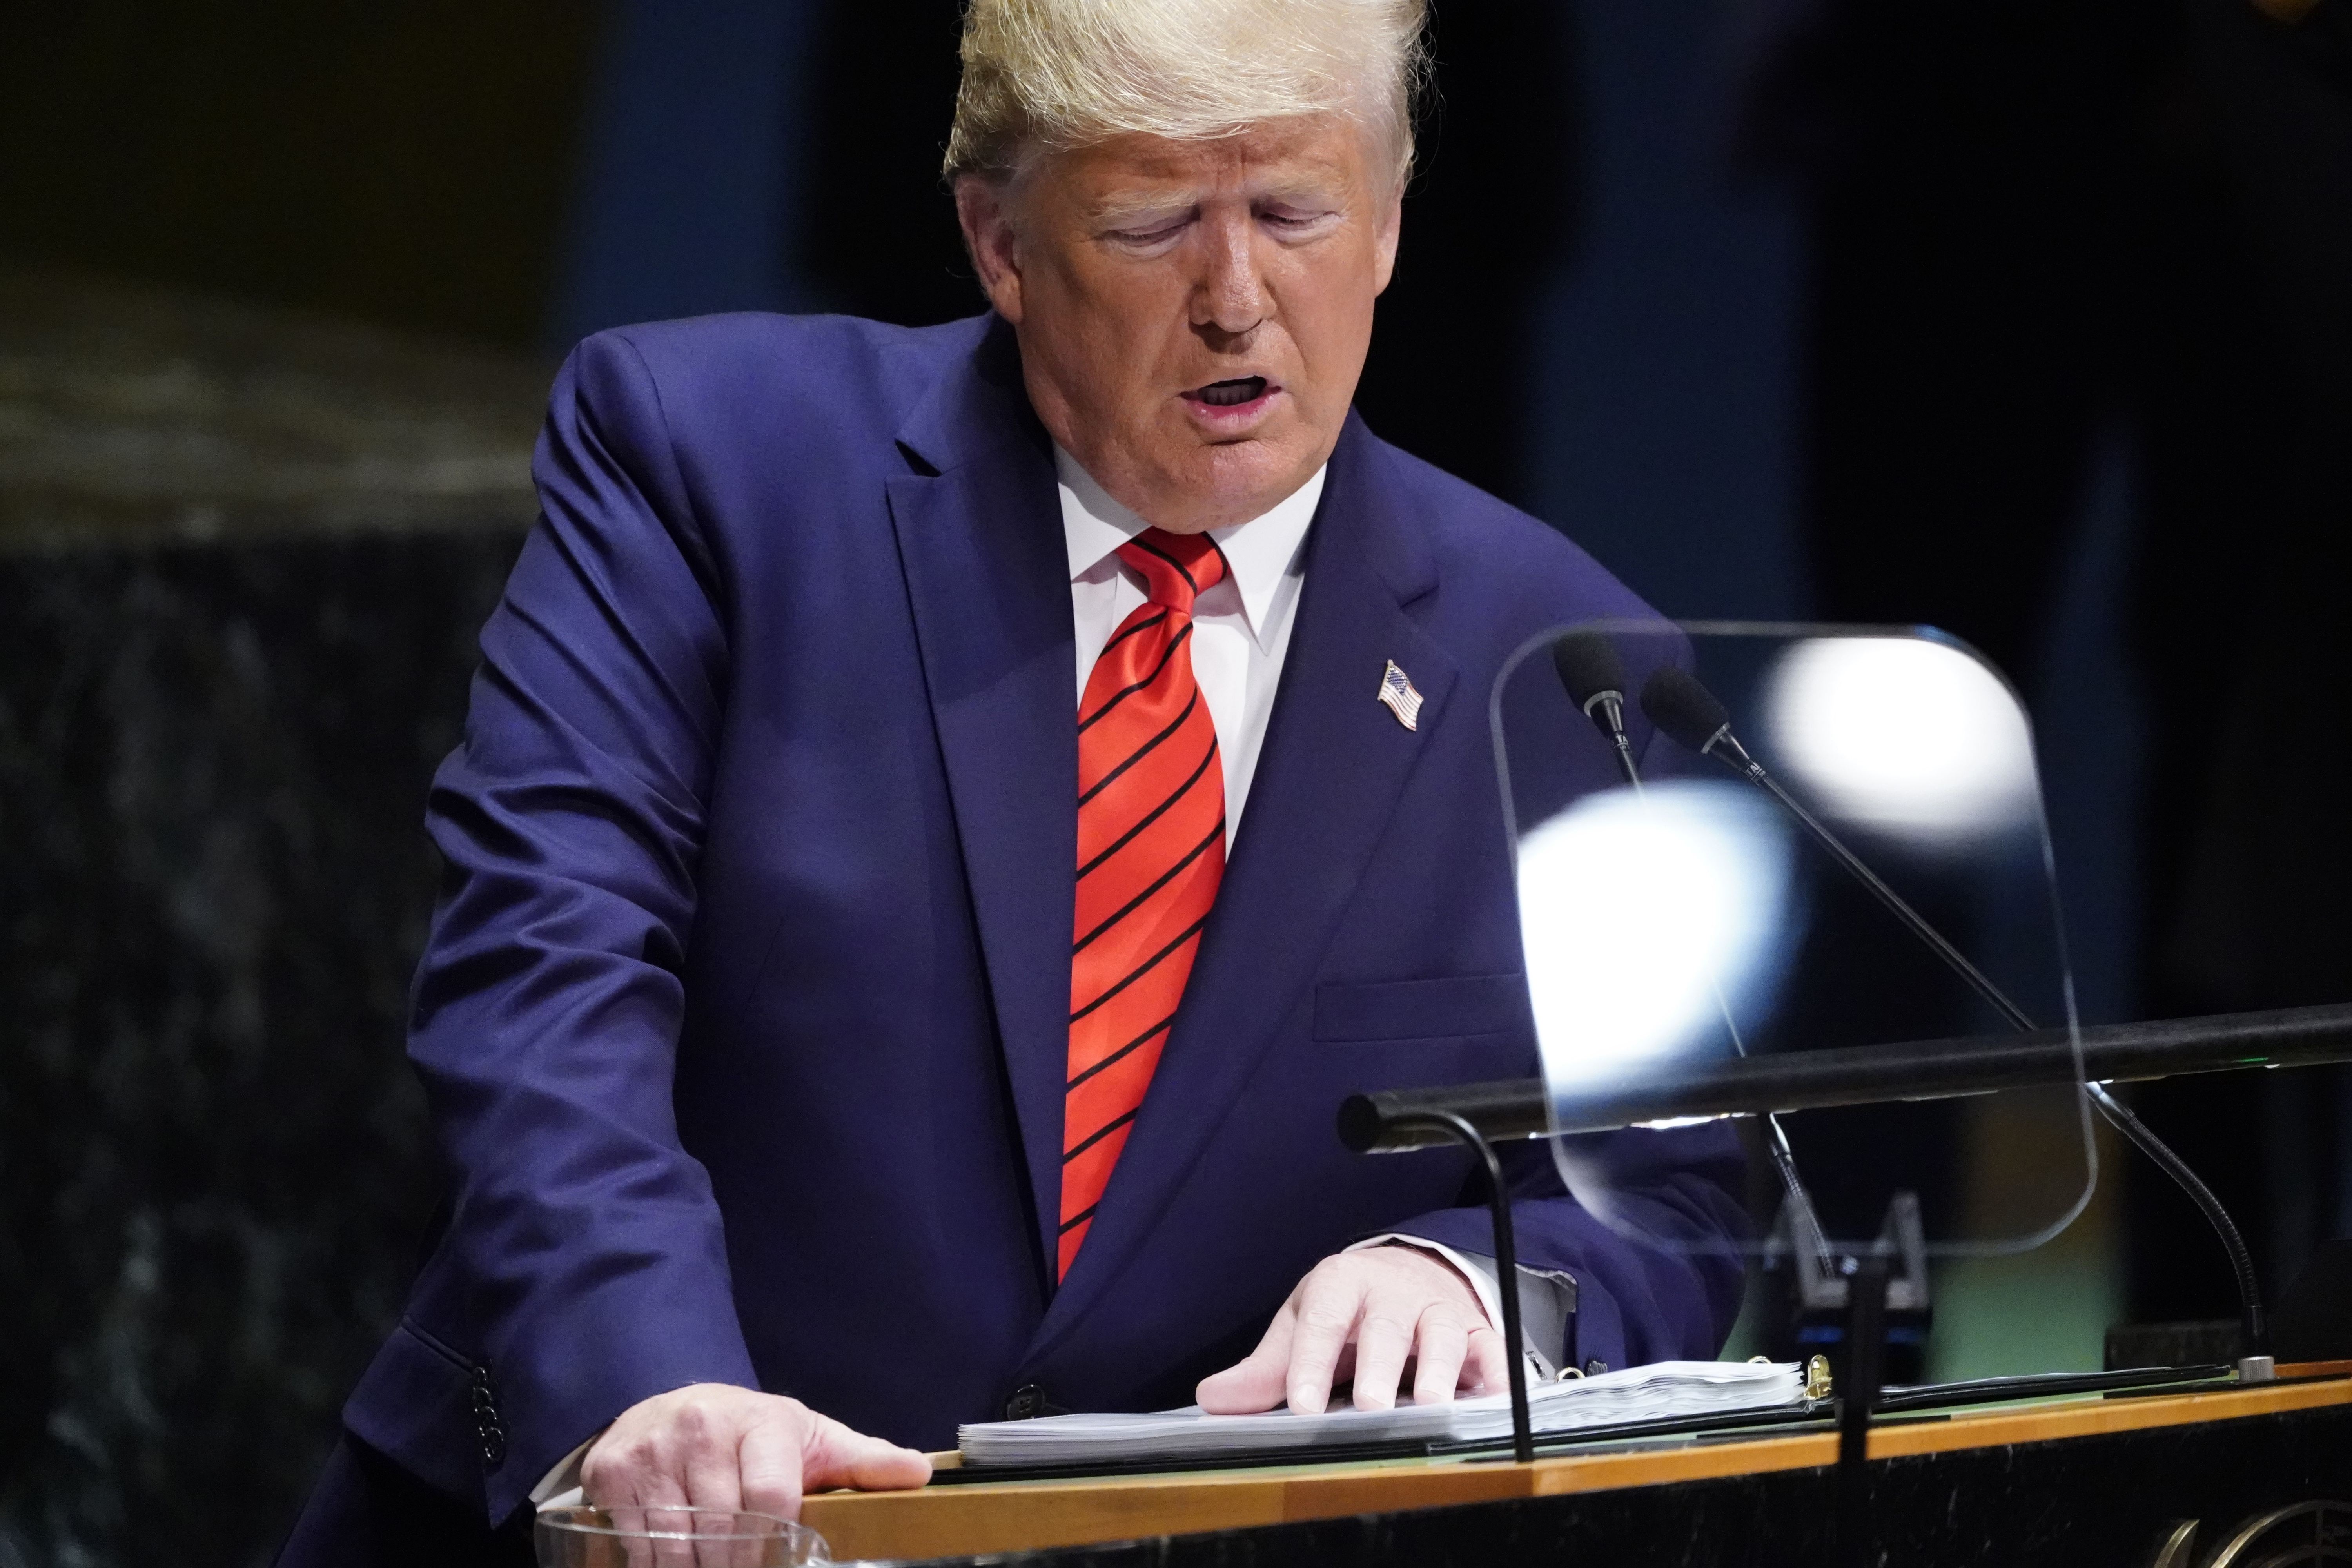 Trump exige al mundo actuar contra el “deseo de sangre” de Irán